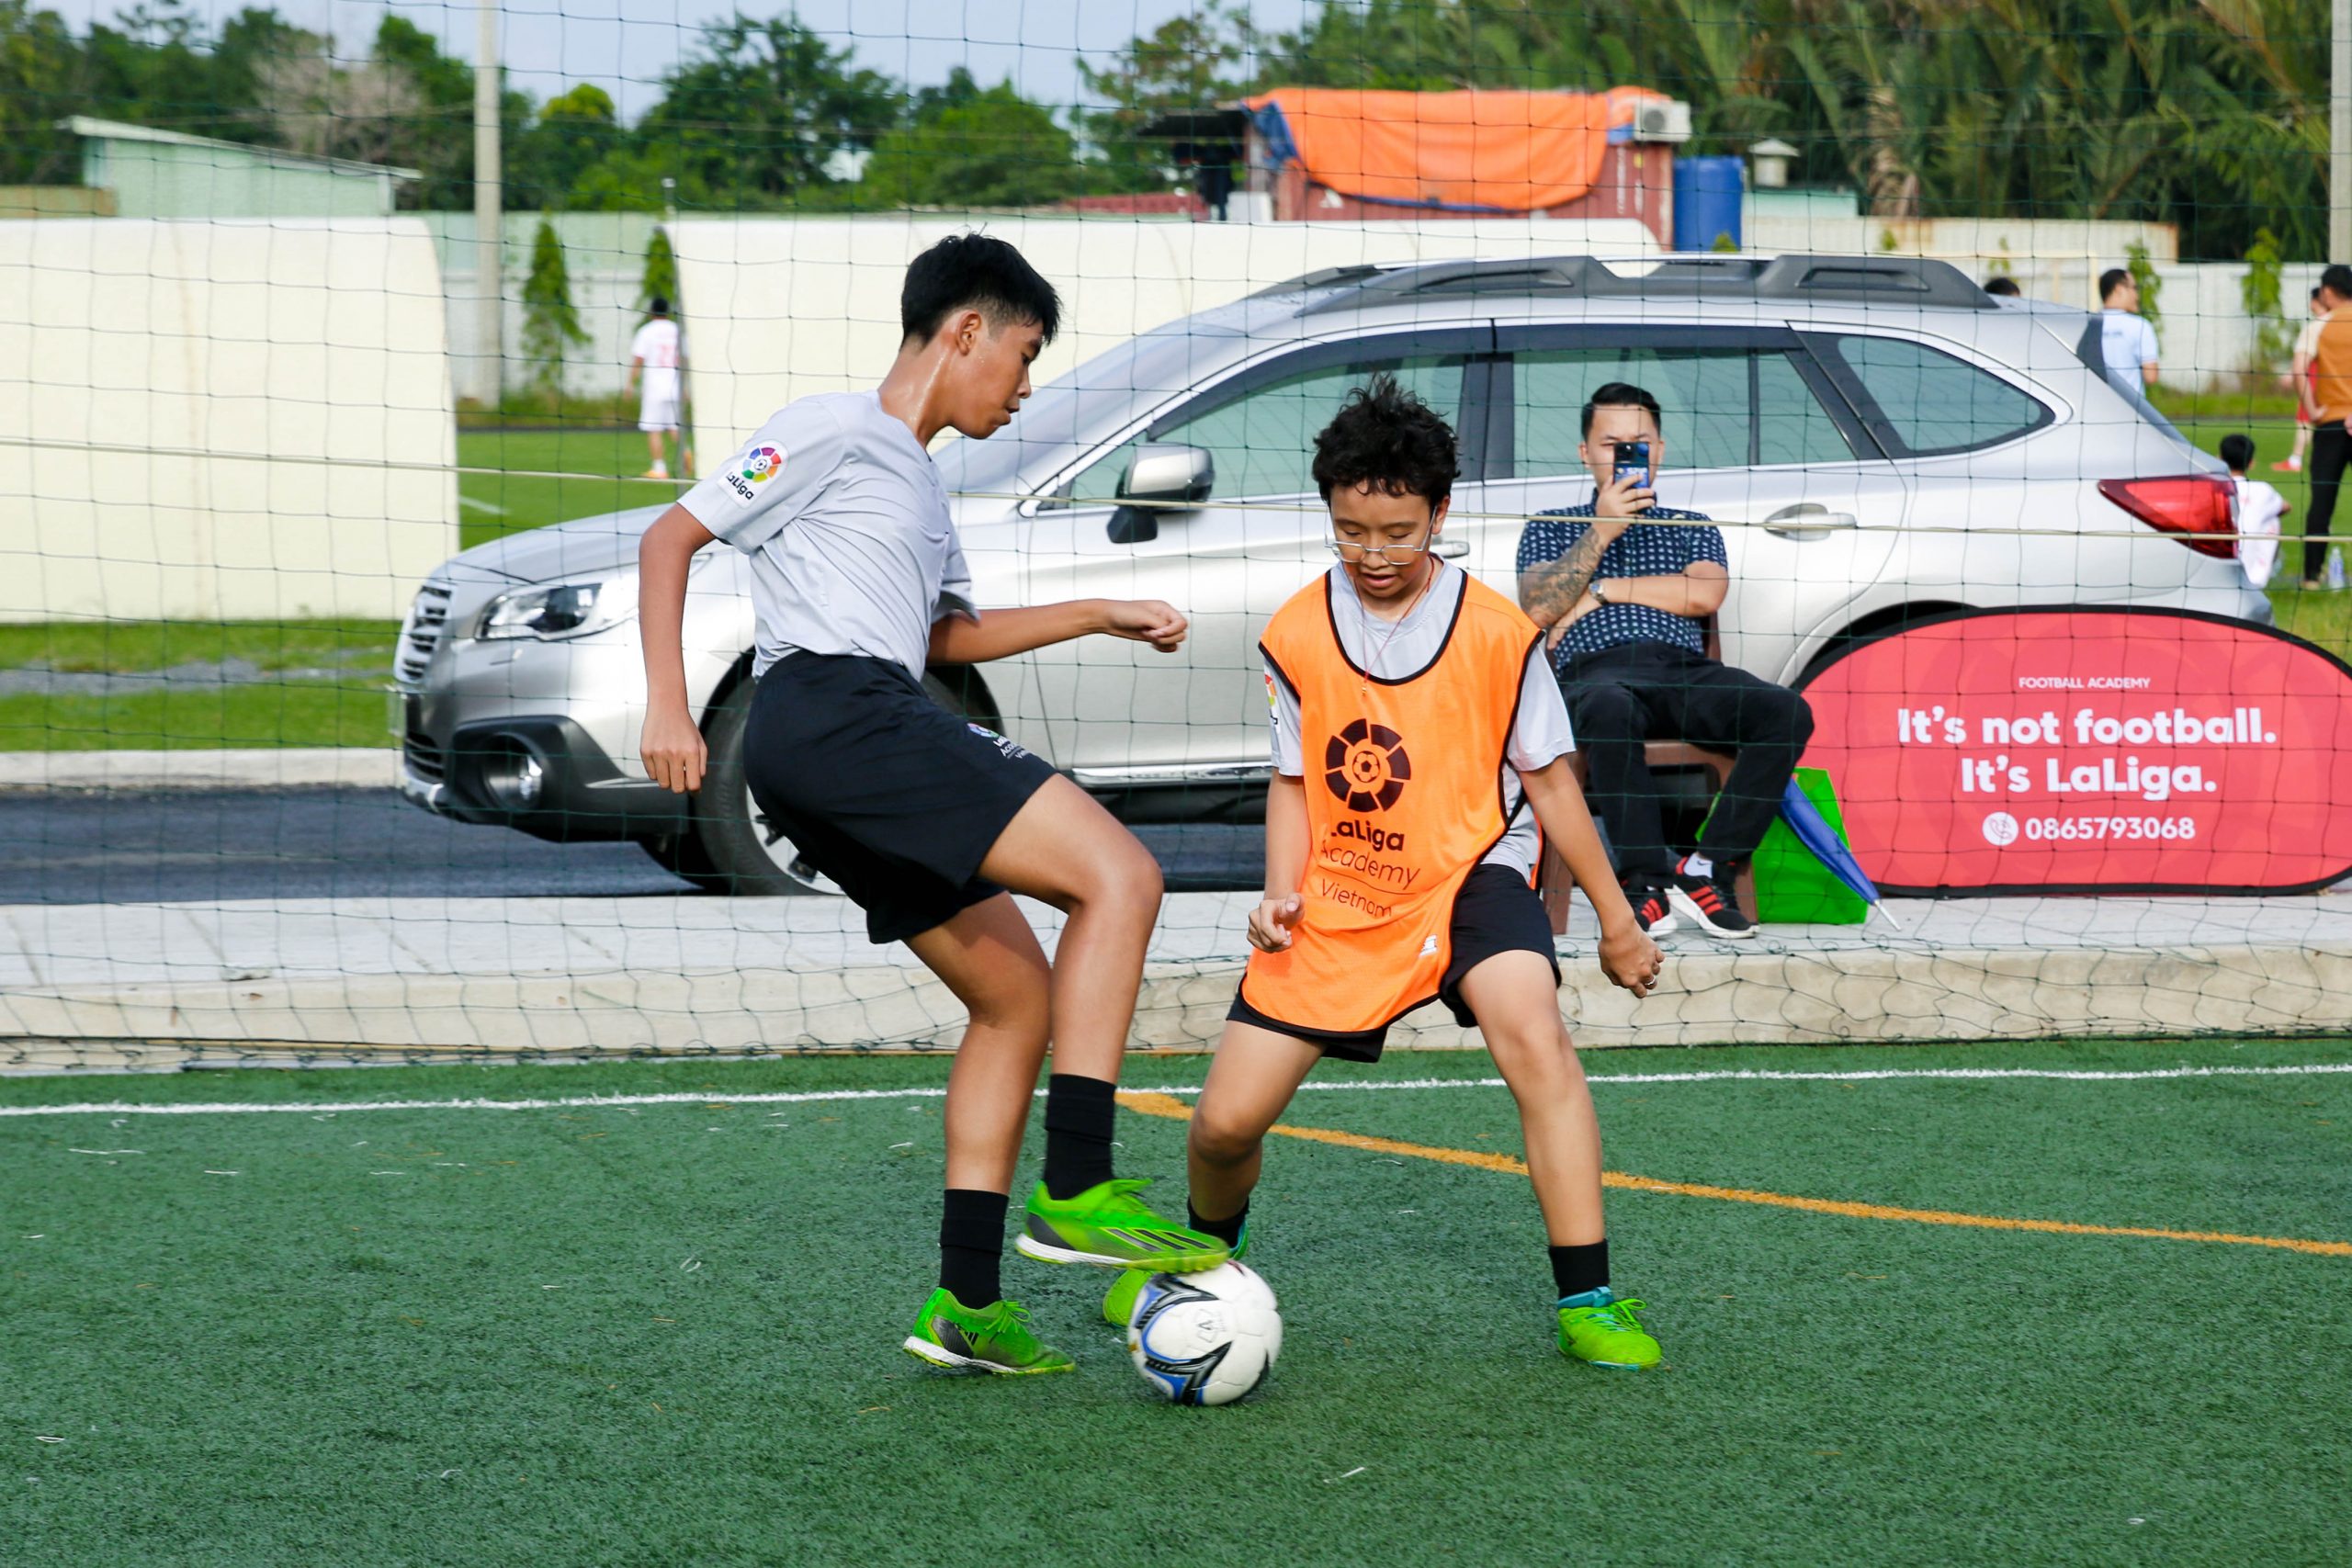 IMG 9847 1 scaled | Laliga Việt Nam - Ươm mầm tài năng bóng đá trẻ